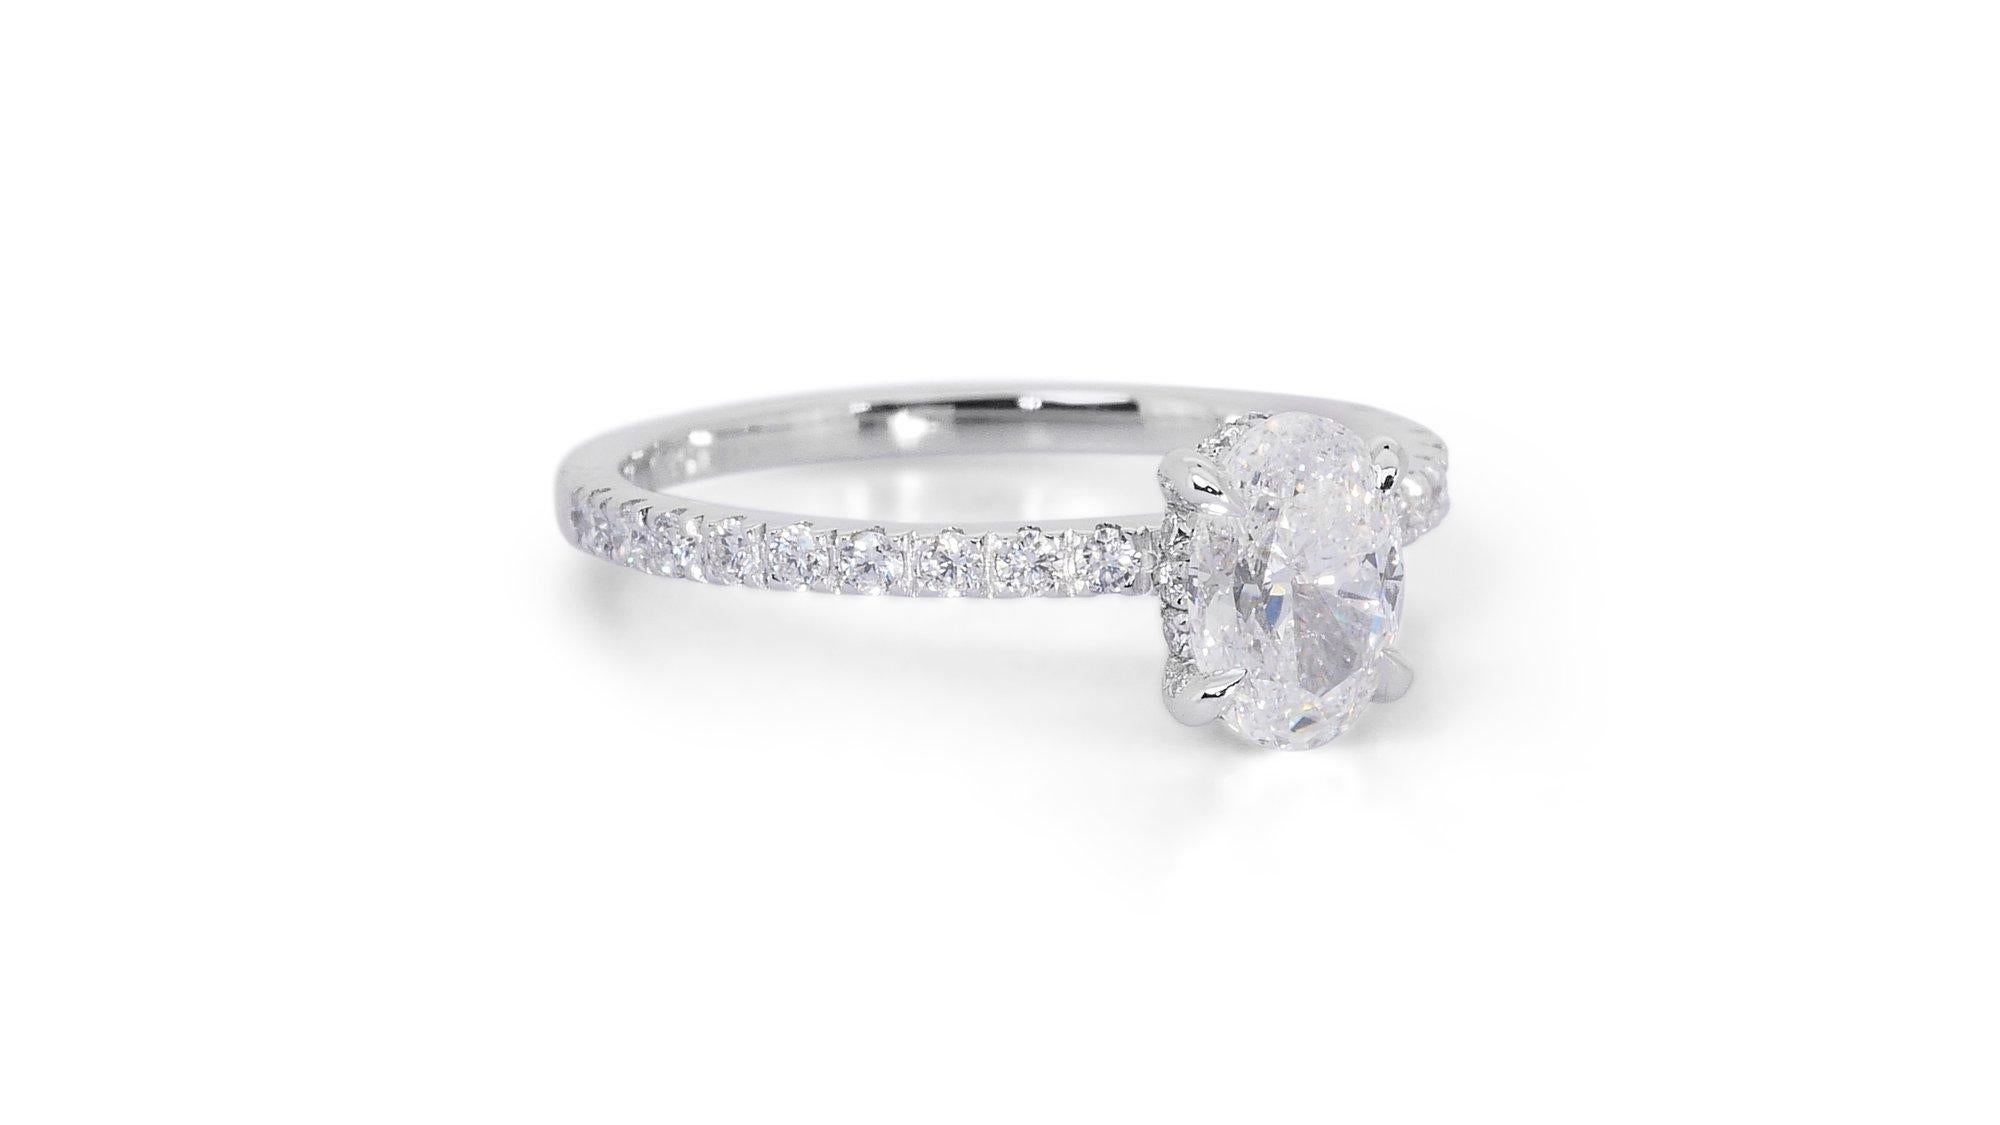 Glanzvolle 1,56ct Oval Diamant Pave Ring in 18k Weißgold - GIA zertifiziert

Dieser raffinierte Ring aus 18 Karat Weißgold ist mit einem schillernden ovalen Diamanten von 1,30 Karat besetzt. Der Mittelstein wird von einem Halo aus 31 funkelnden